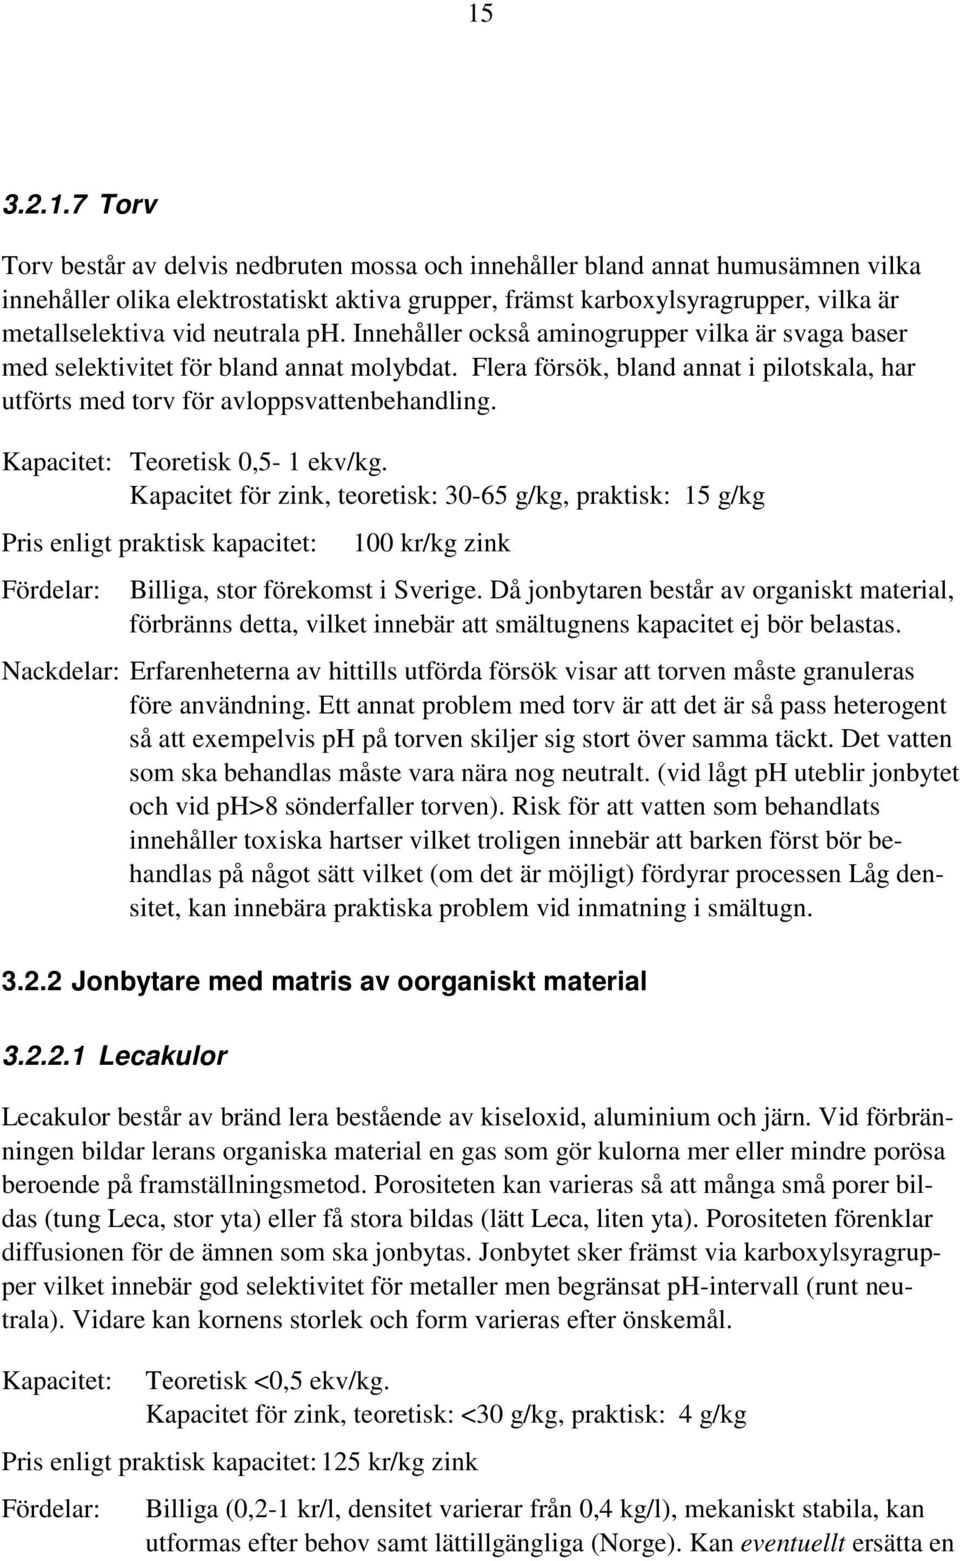 Kapacitet: Teoretisk 0,5-1 ekv/kg. Kapacitet för zink, teoretisk: 30-65 g/kg, praktisk: 15 g/kg Pris enligt praktisk kapacitet: Fördelar: 100 kr/kg zink Billiga, stor förekomst i Sverige.